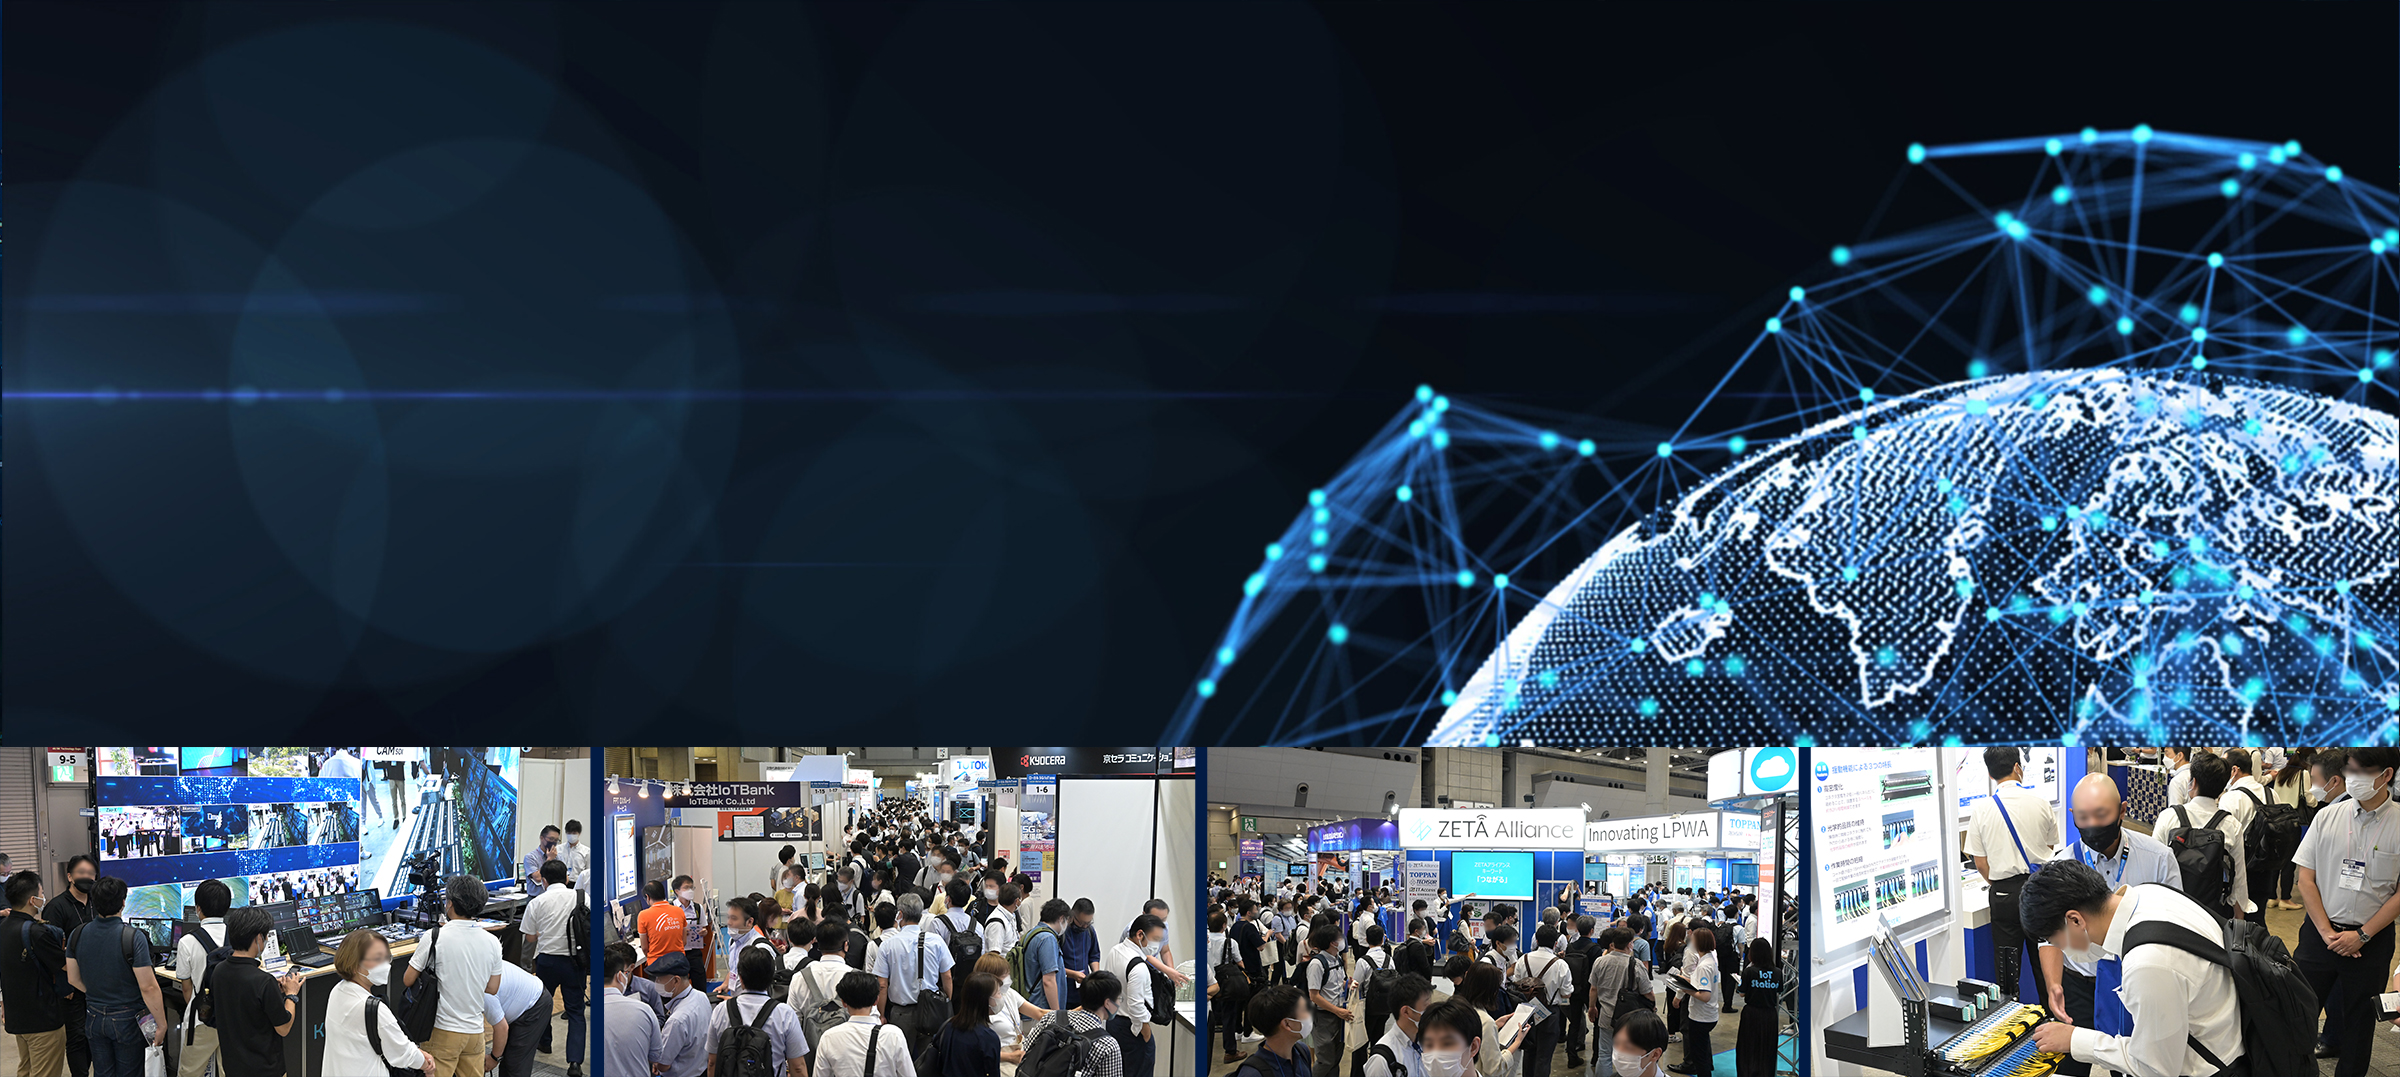 Iot Tech Expo Highlights, Blog